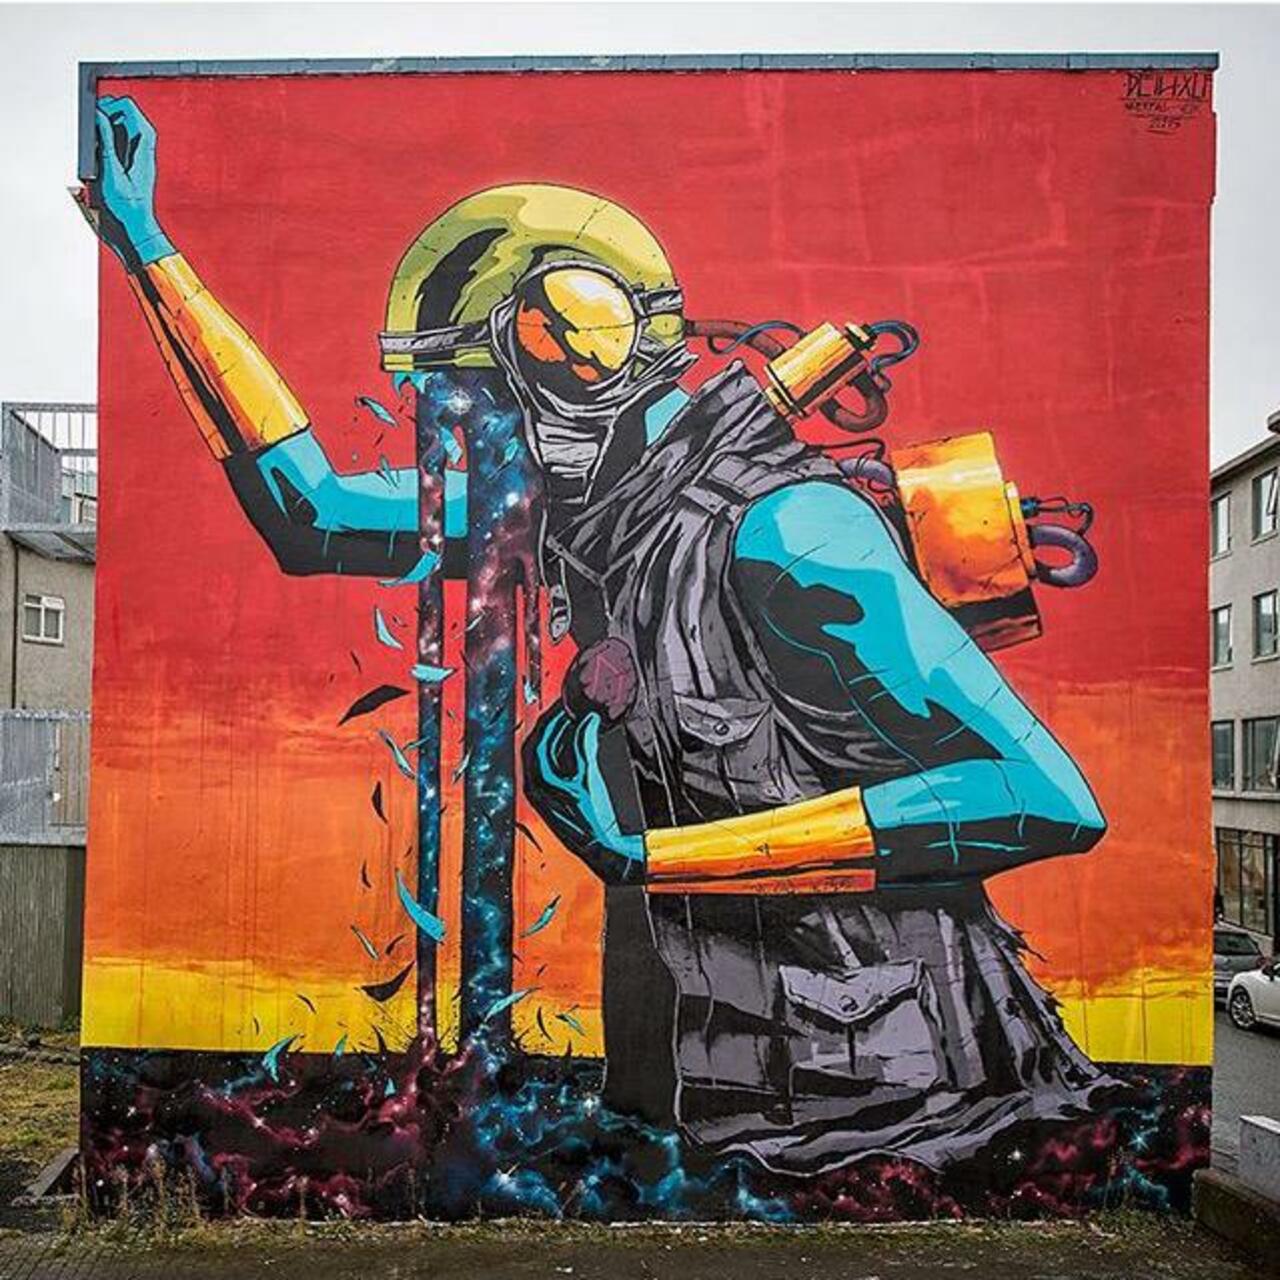 Street Art by Deih in Reykjavik 

#art #graffiti #mural #streetart https://t.co/5wYl7nuVOf